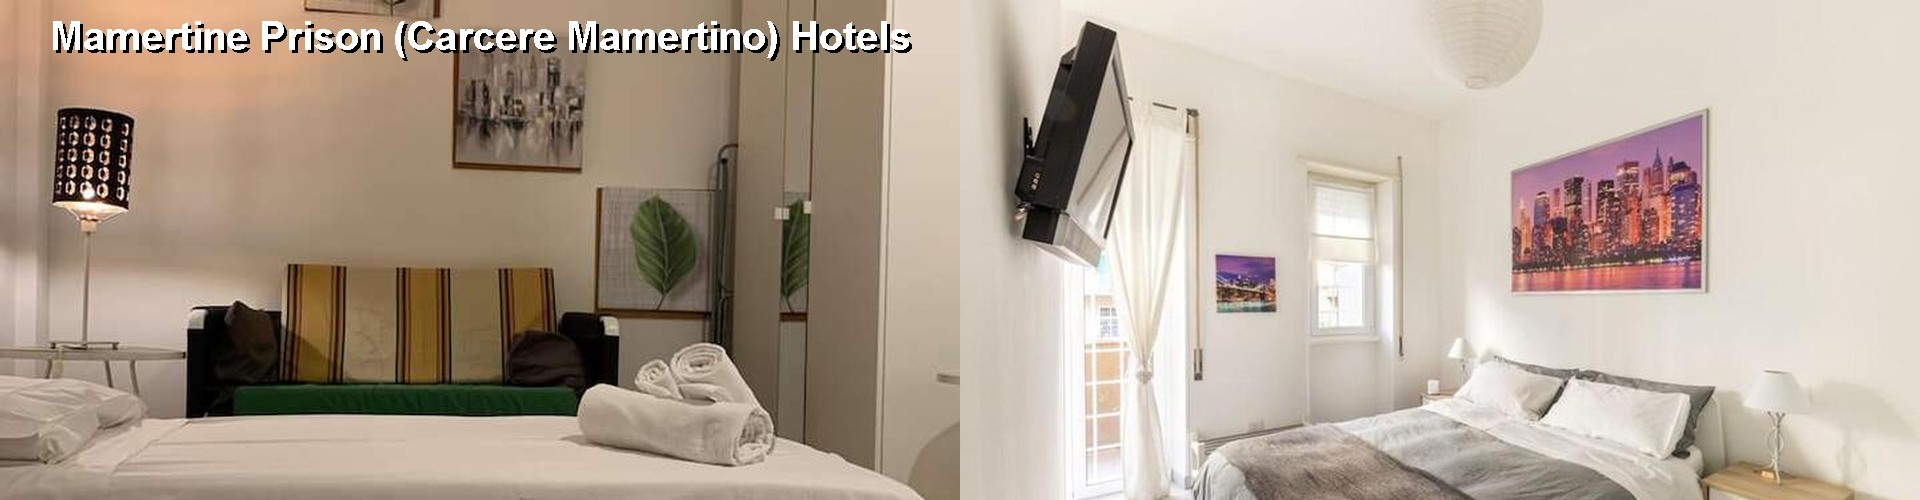 5 Best Hotels near Mamertine Prison (Carcere Mamertino)